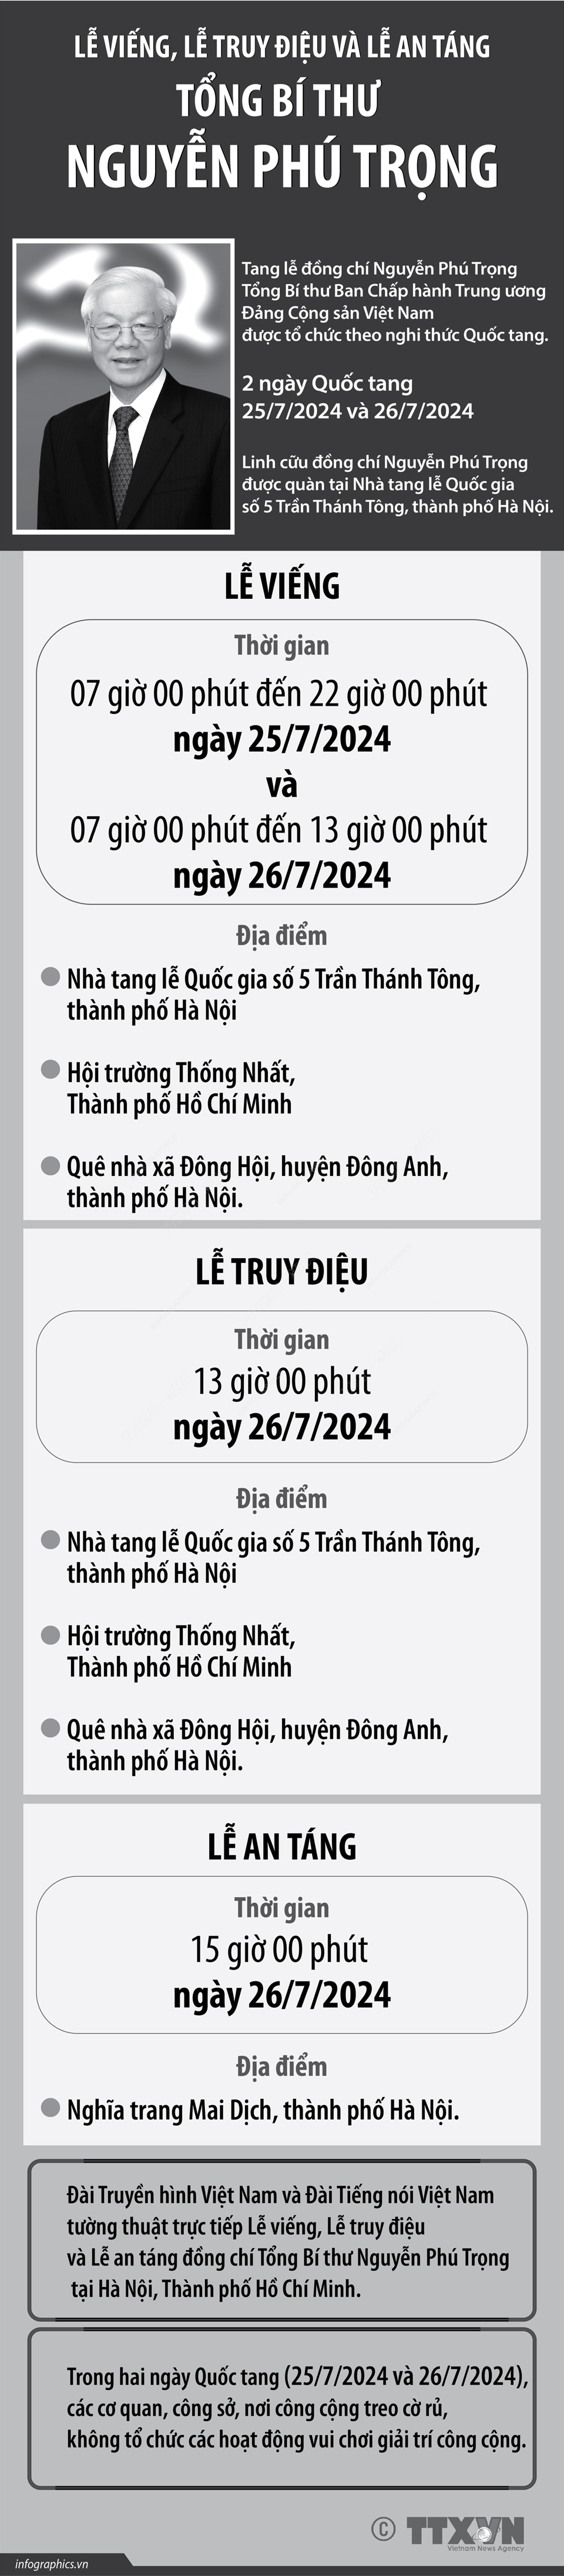 Tạo điều kiện thuận lợi để Nhân dân vào viếng Tổng Bí thư Nguyễn Phú Trọng